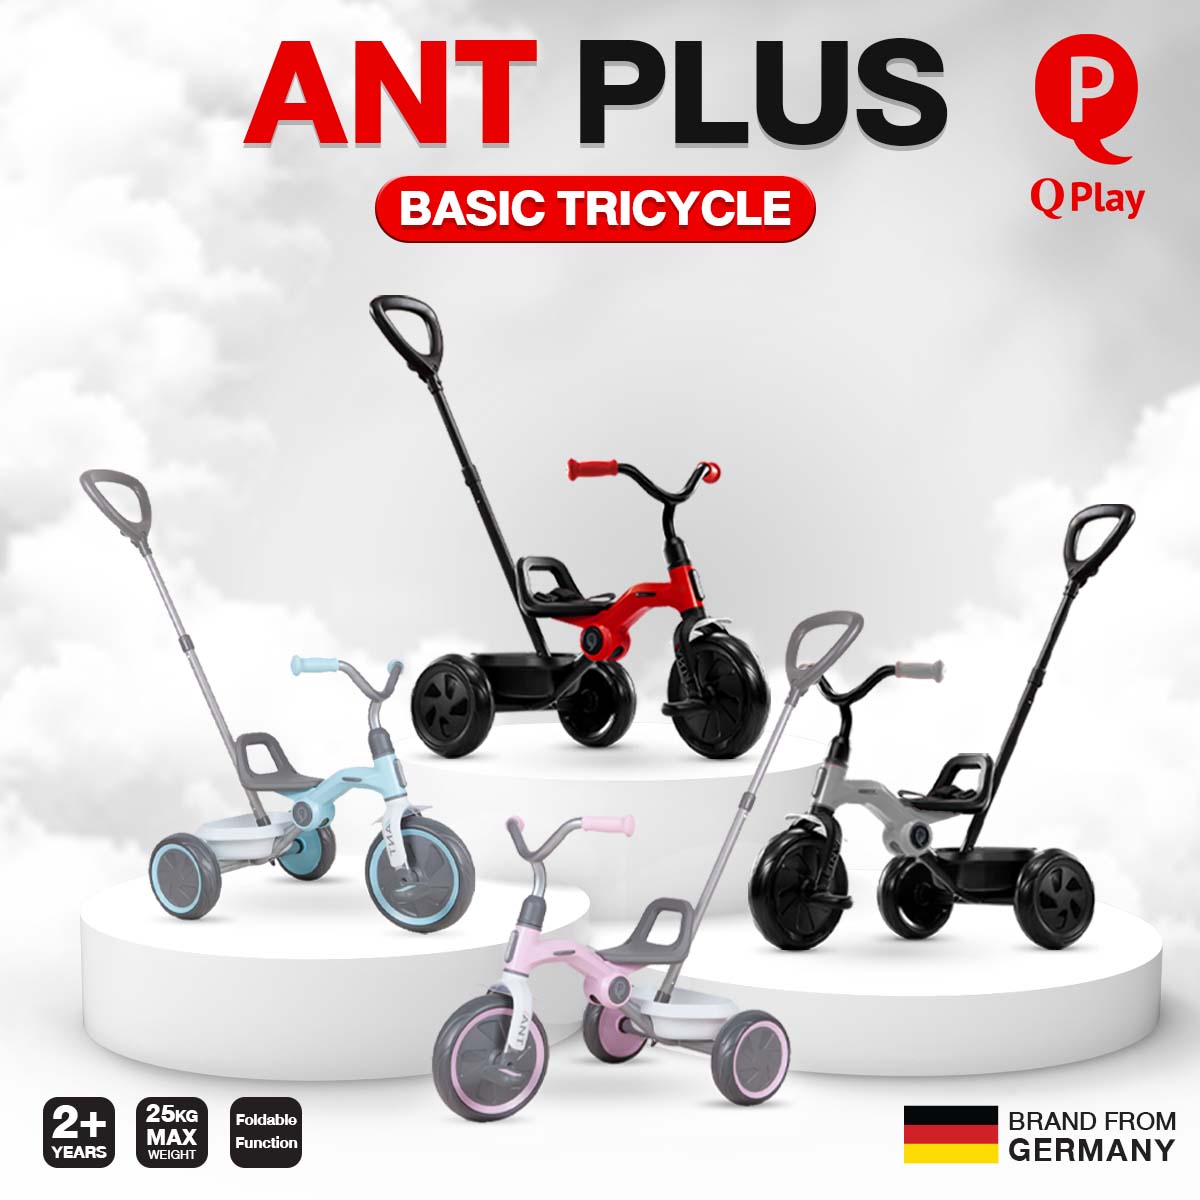 พิเศษ 5,900.-// Qplay Ant Plus Basic Tricycle จักรยาน 3ล้อปกติ 7,900.- *ค่าส่ง 200 บาท ซึ่งรวมกับราคาด้านล่างแล้ว)